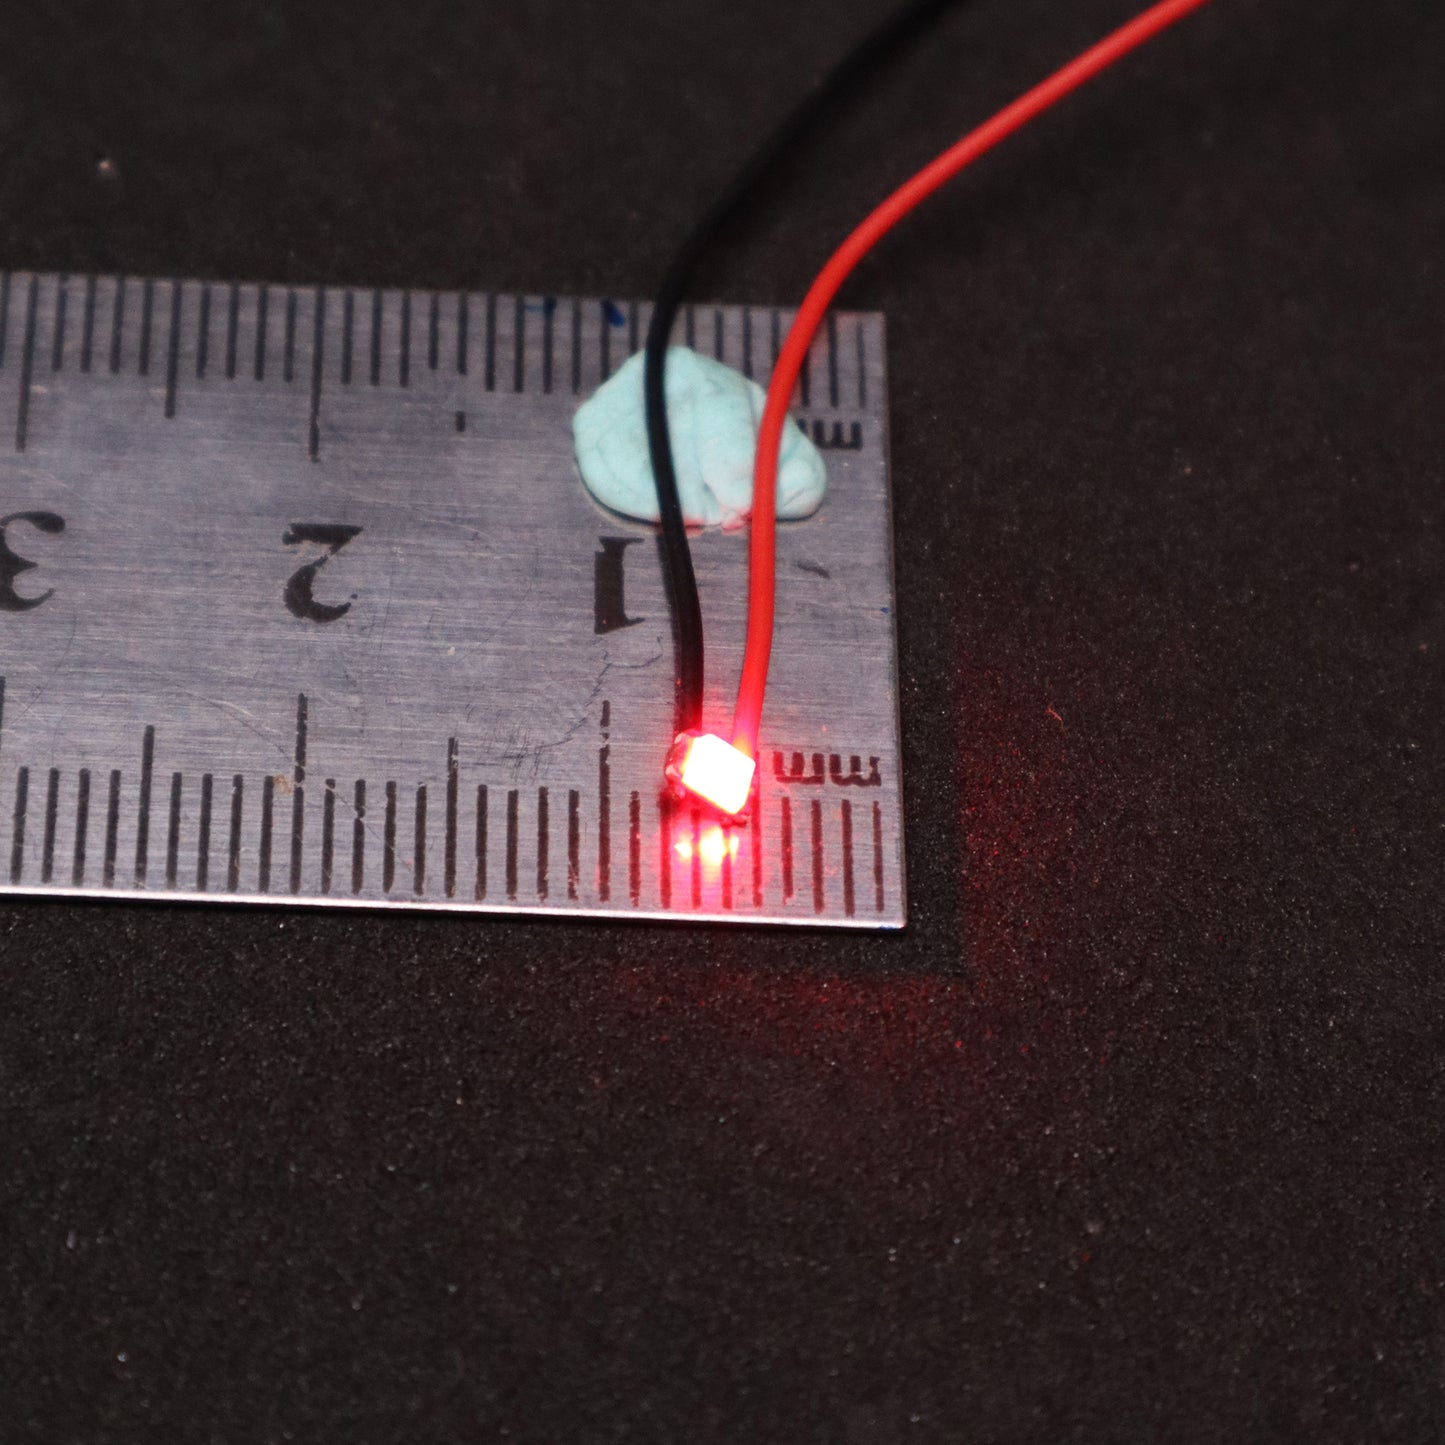 Micro LED / Super Bright LED / 3mm SMD LED (2 Pcs)